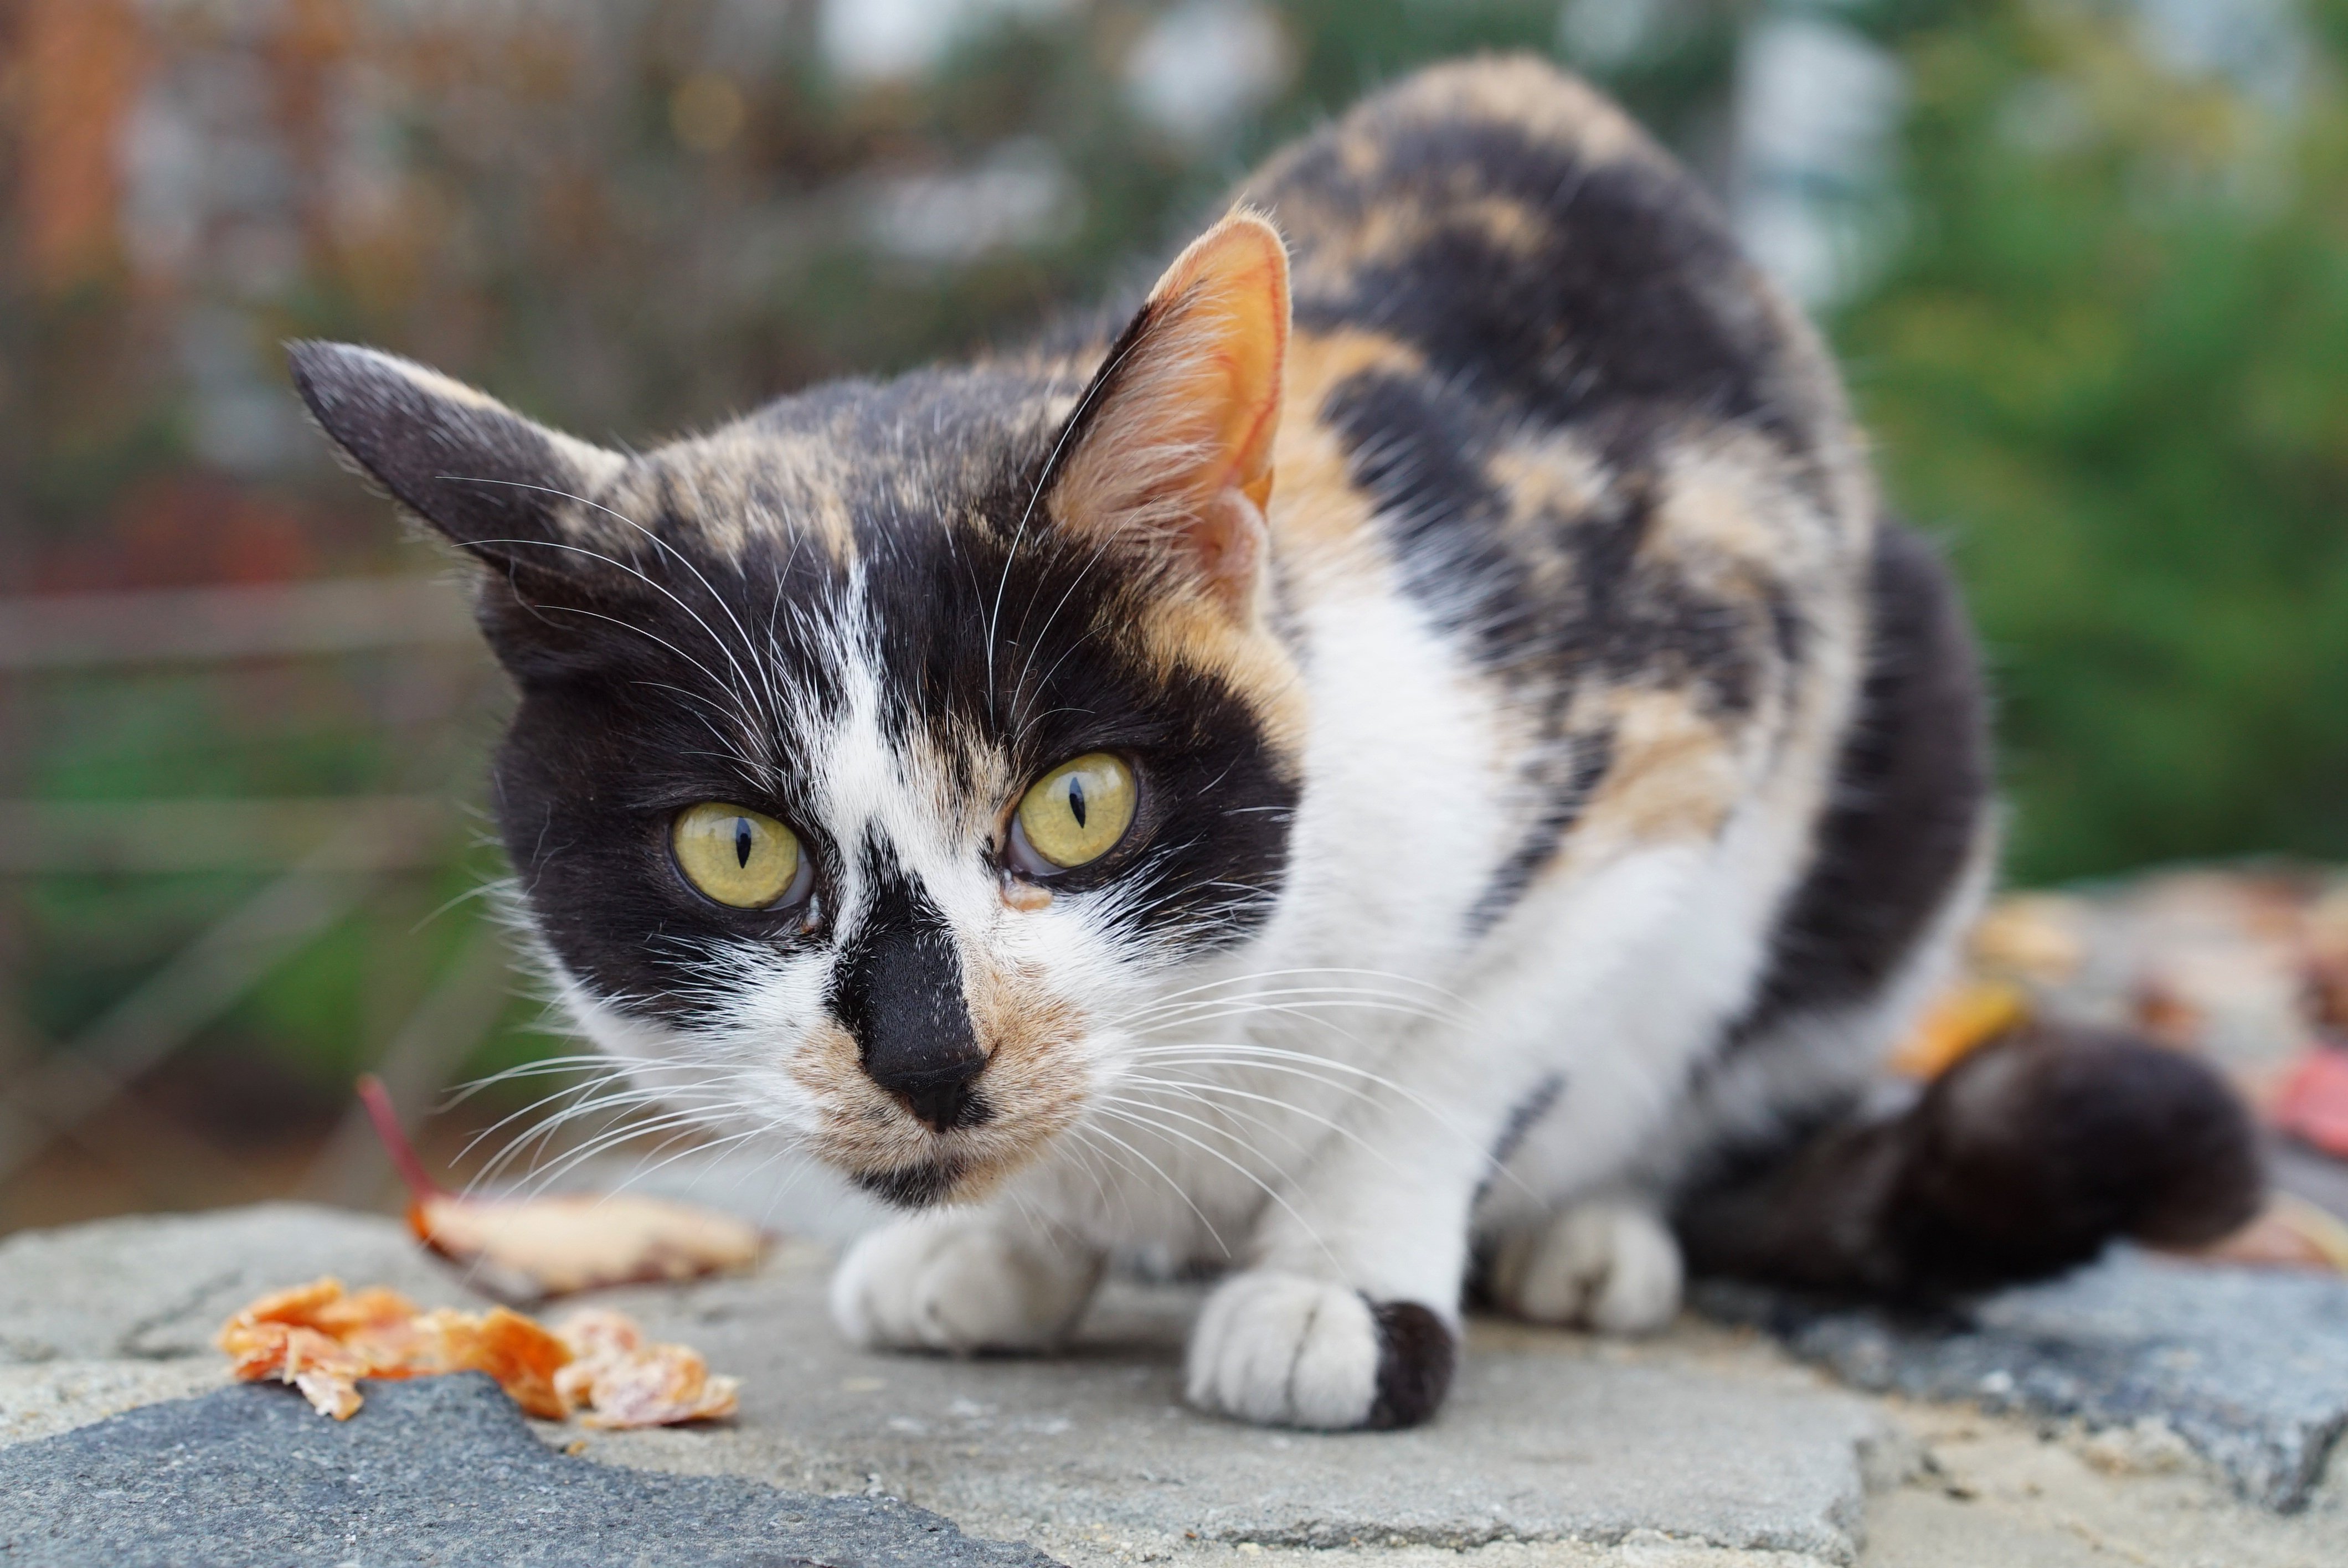 Известно что трехшерстные кошки всегда самки. Европейская короткошерстная кошка черепаховая. Трехшерстные коты. Кошка трехцветная короткошерстная. Трёхшёрстная кошка табби.